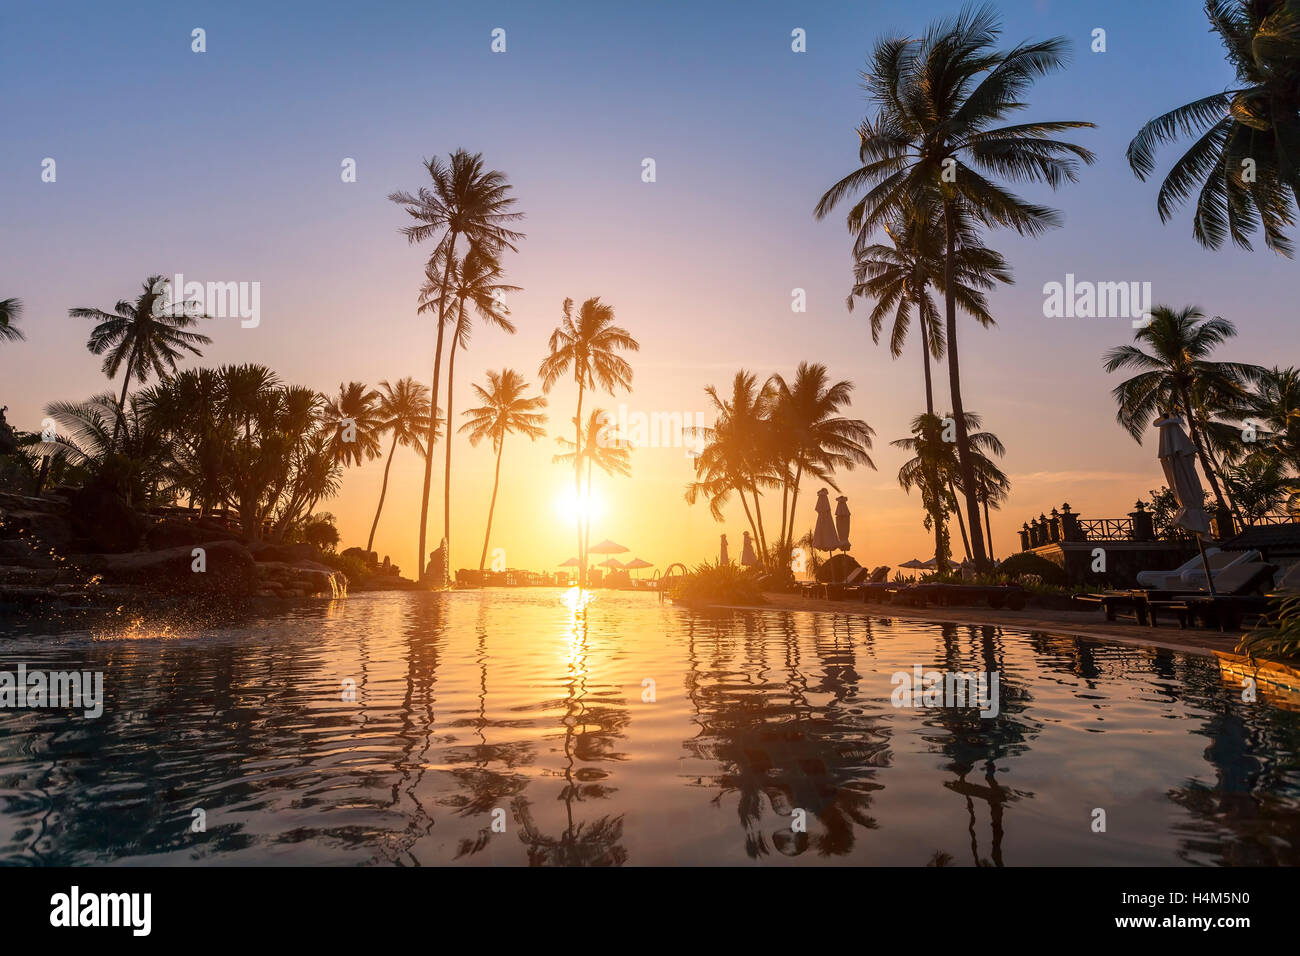 Hotel de lujo en la playa, la silueta de palmeras, piscina, un hermoso atardecer Foto de stock